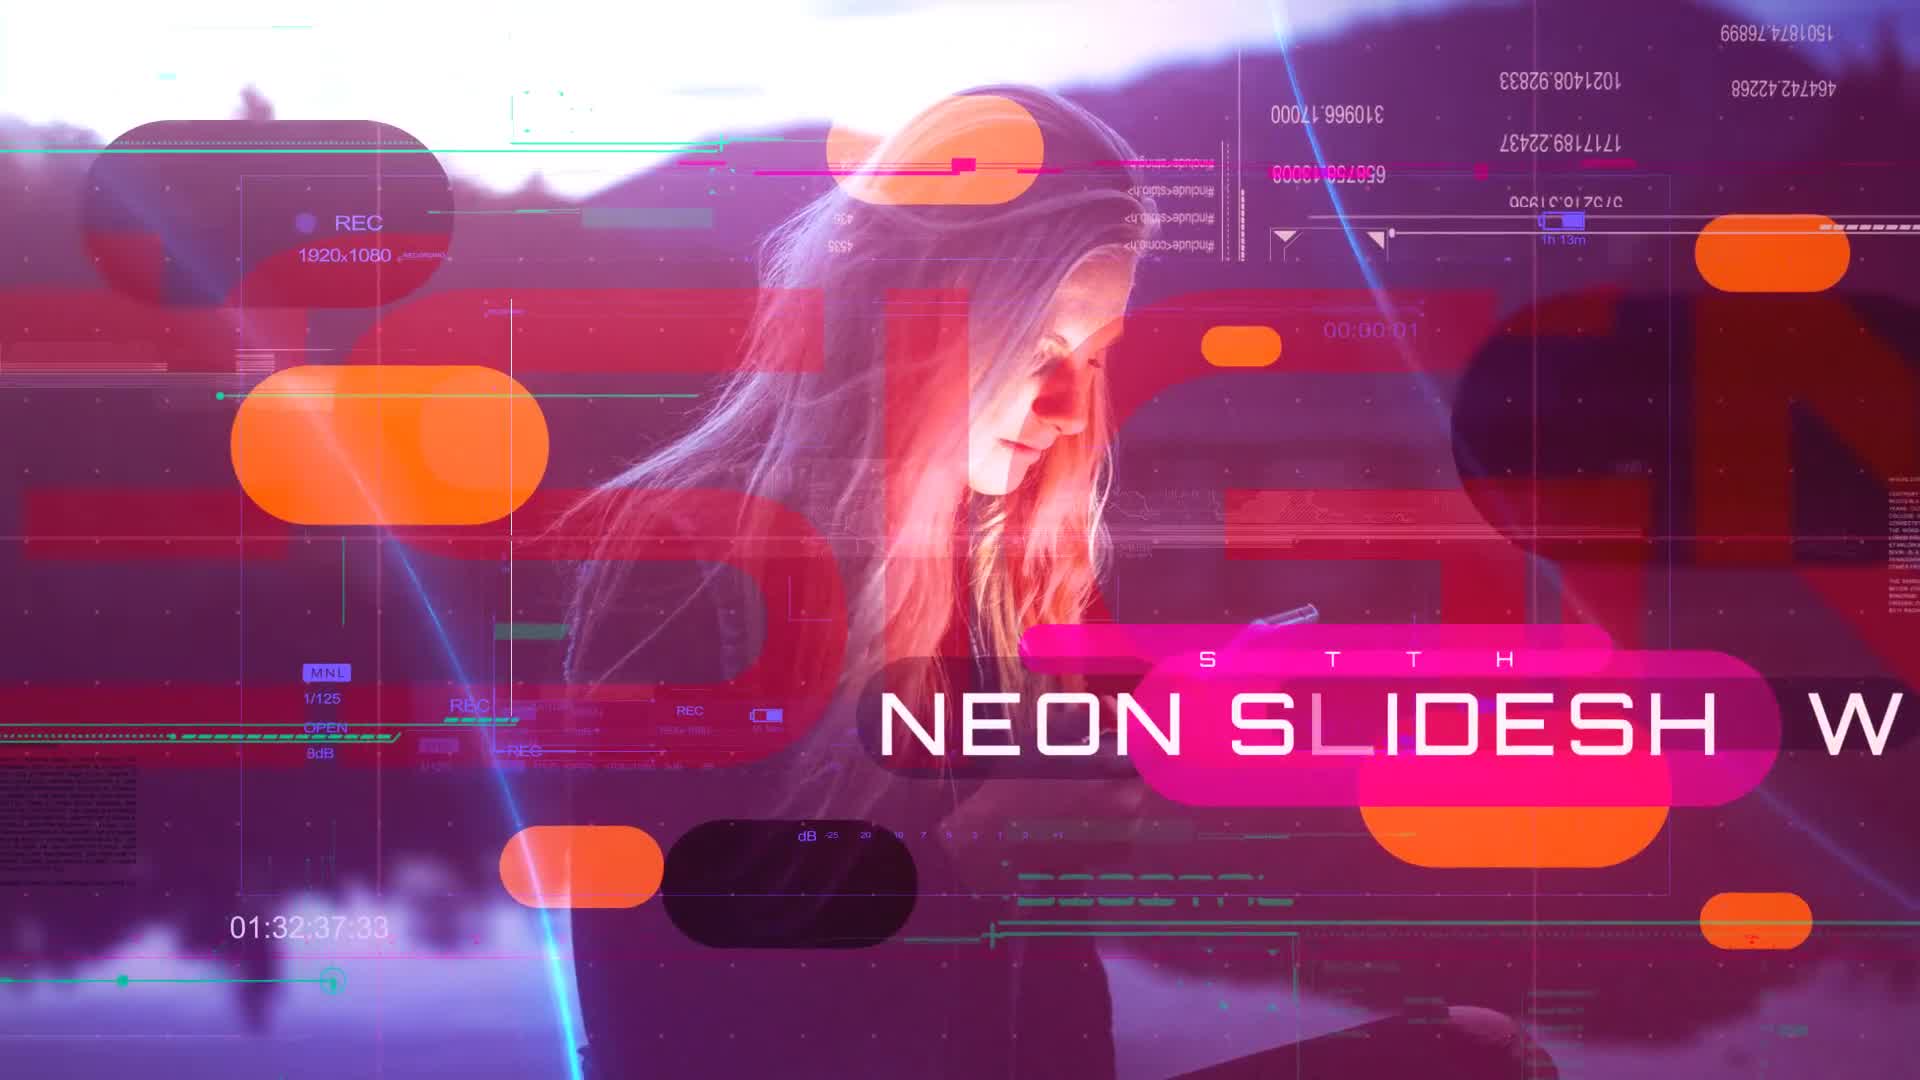 Smooth Techno Neon Slideshow Videohive 32299148 Premiere Pro Image 12